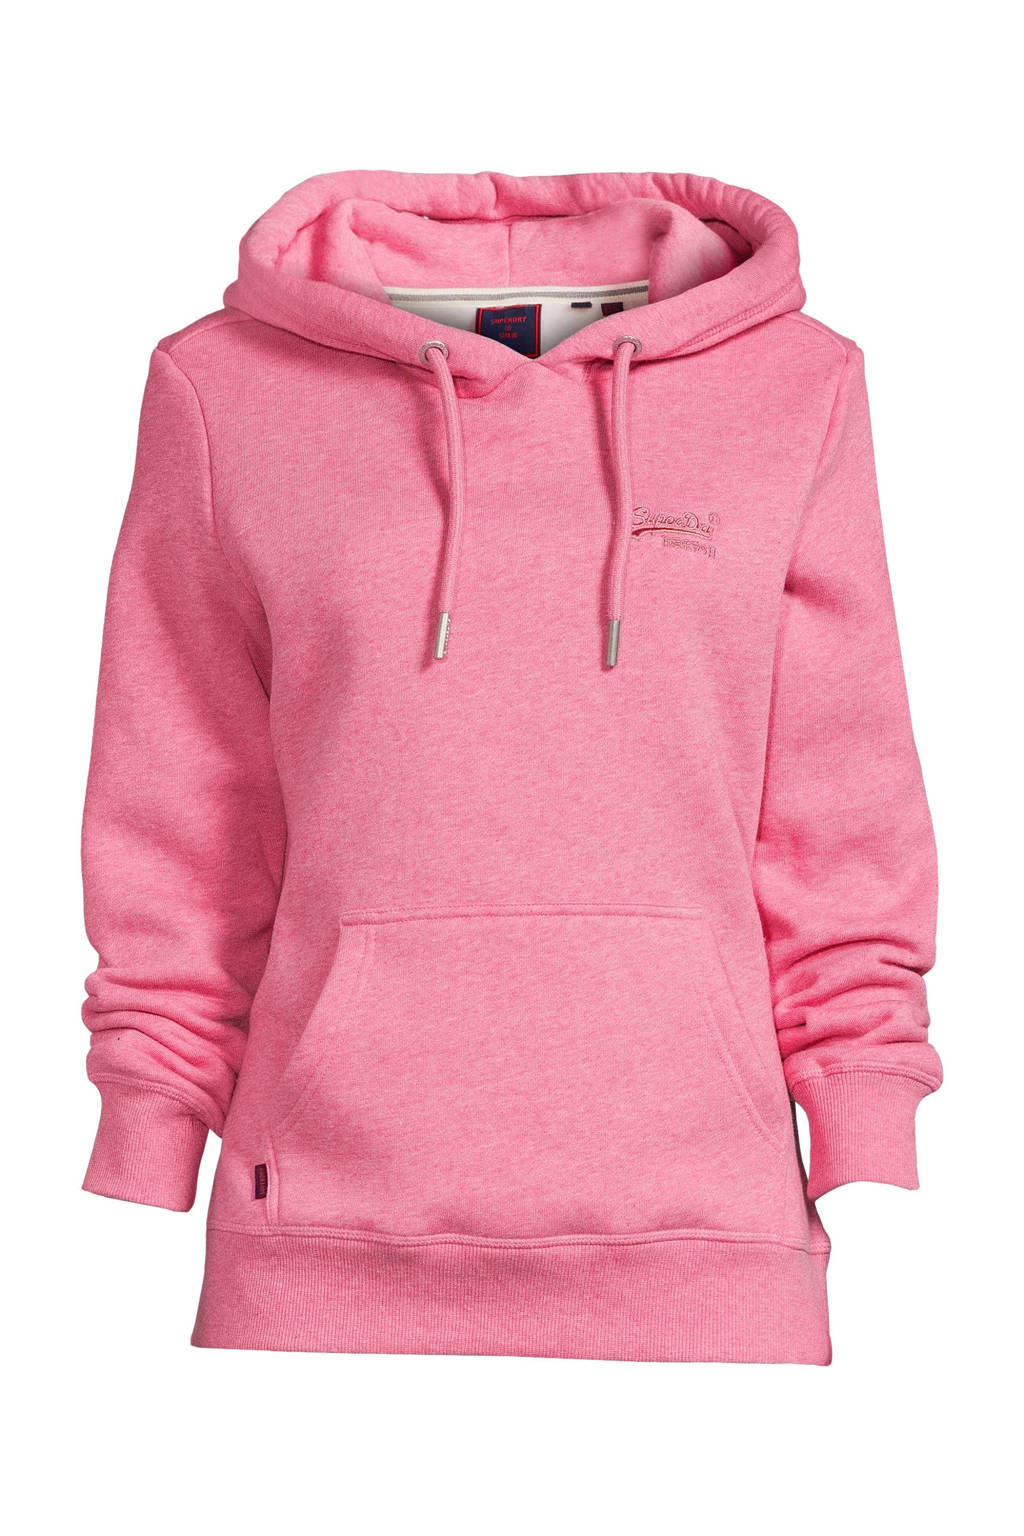 Bevoorrecht sensatie Crack pot Superdry hoodie met logo roze | wehkamp